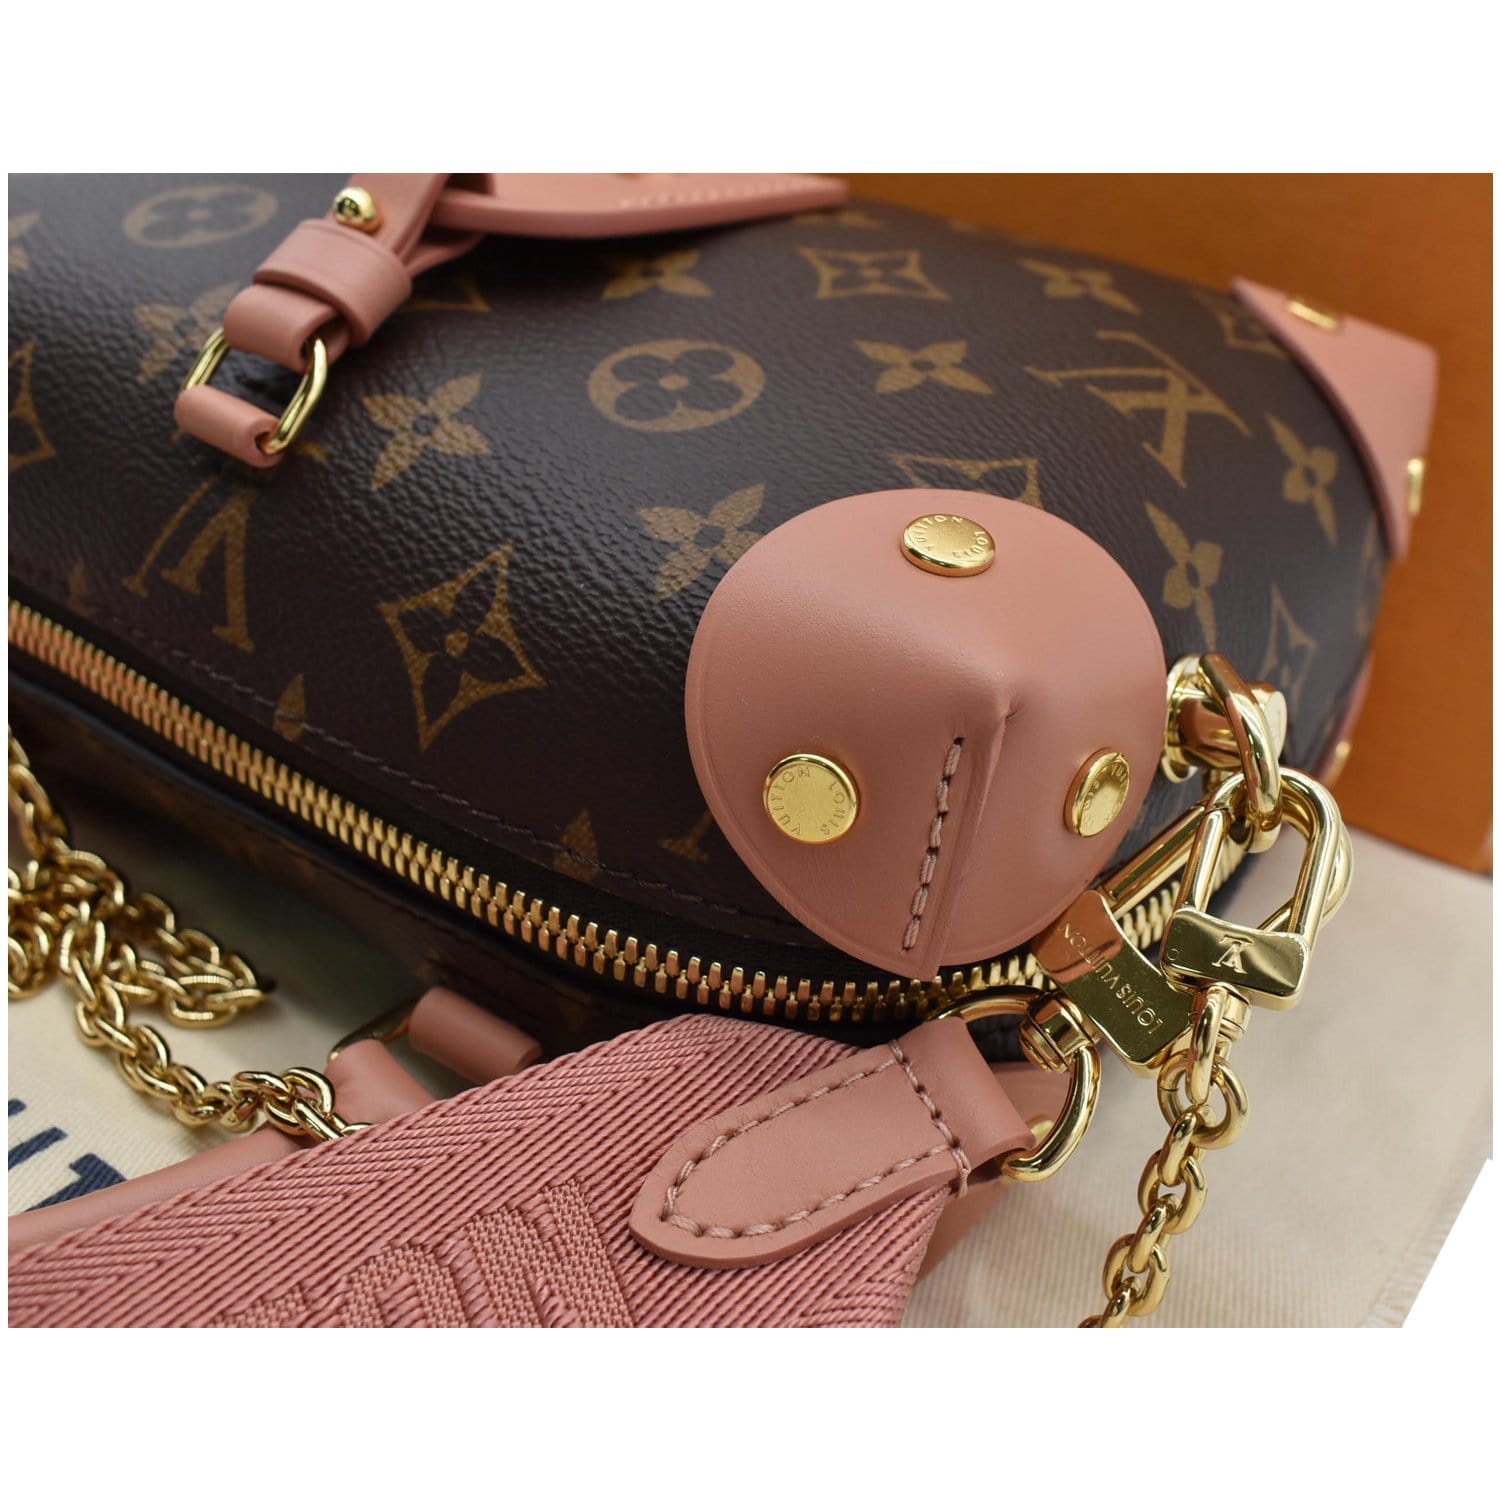 What's in my Louis Vuitton Petite Malle Souple Bag #LVbag